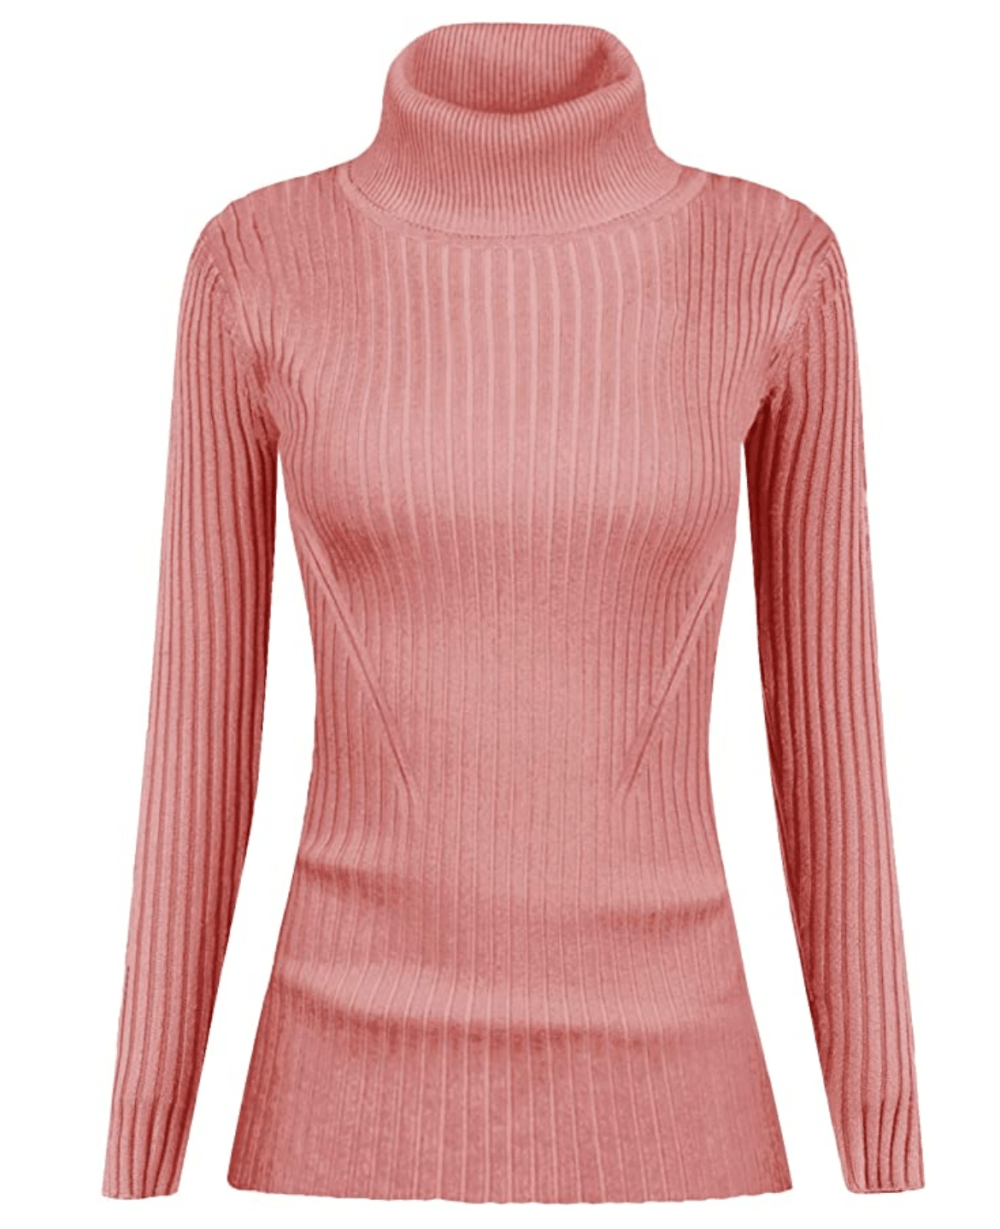 v28 Ribbed Turtleneck Sweater